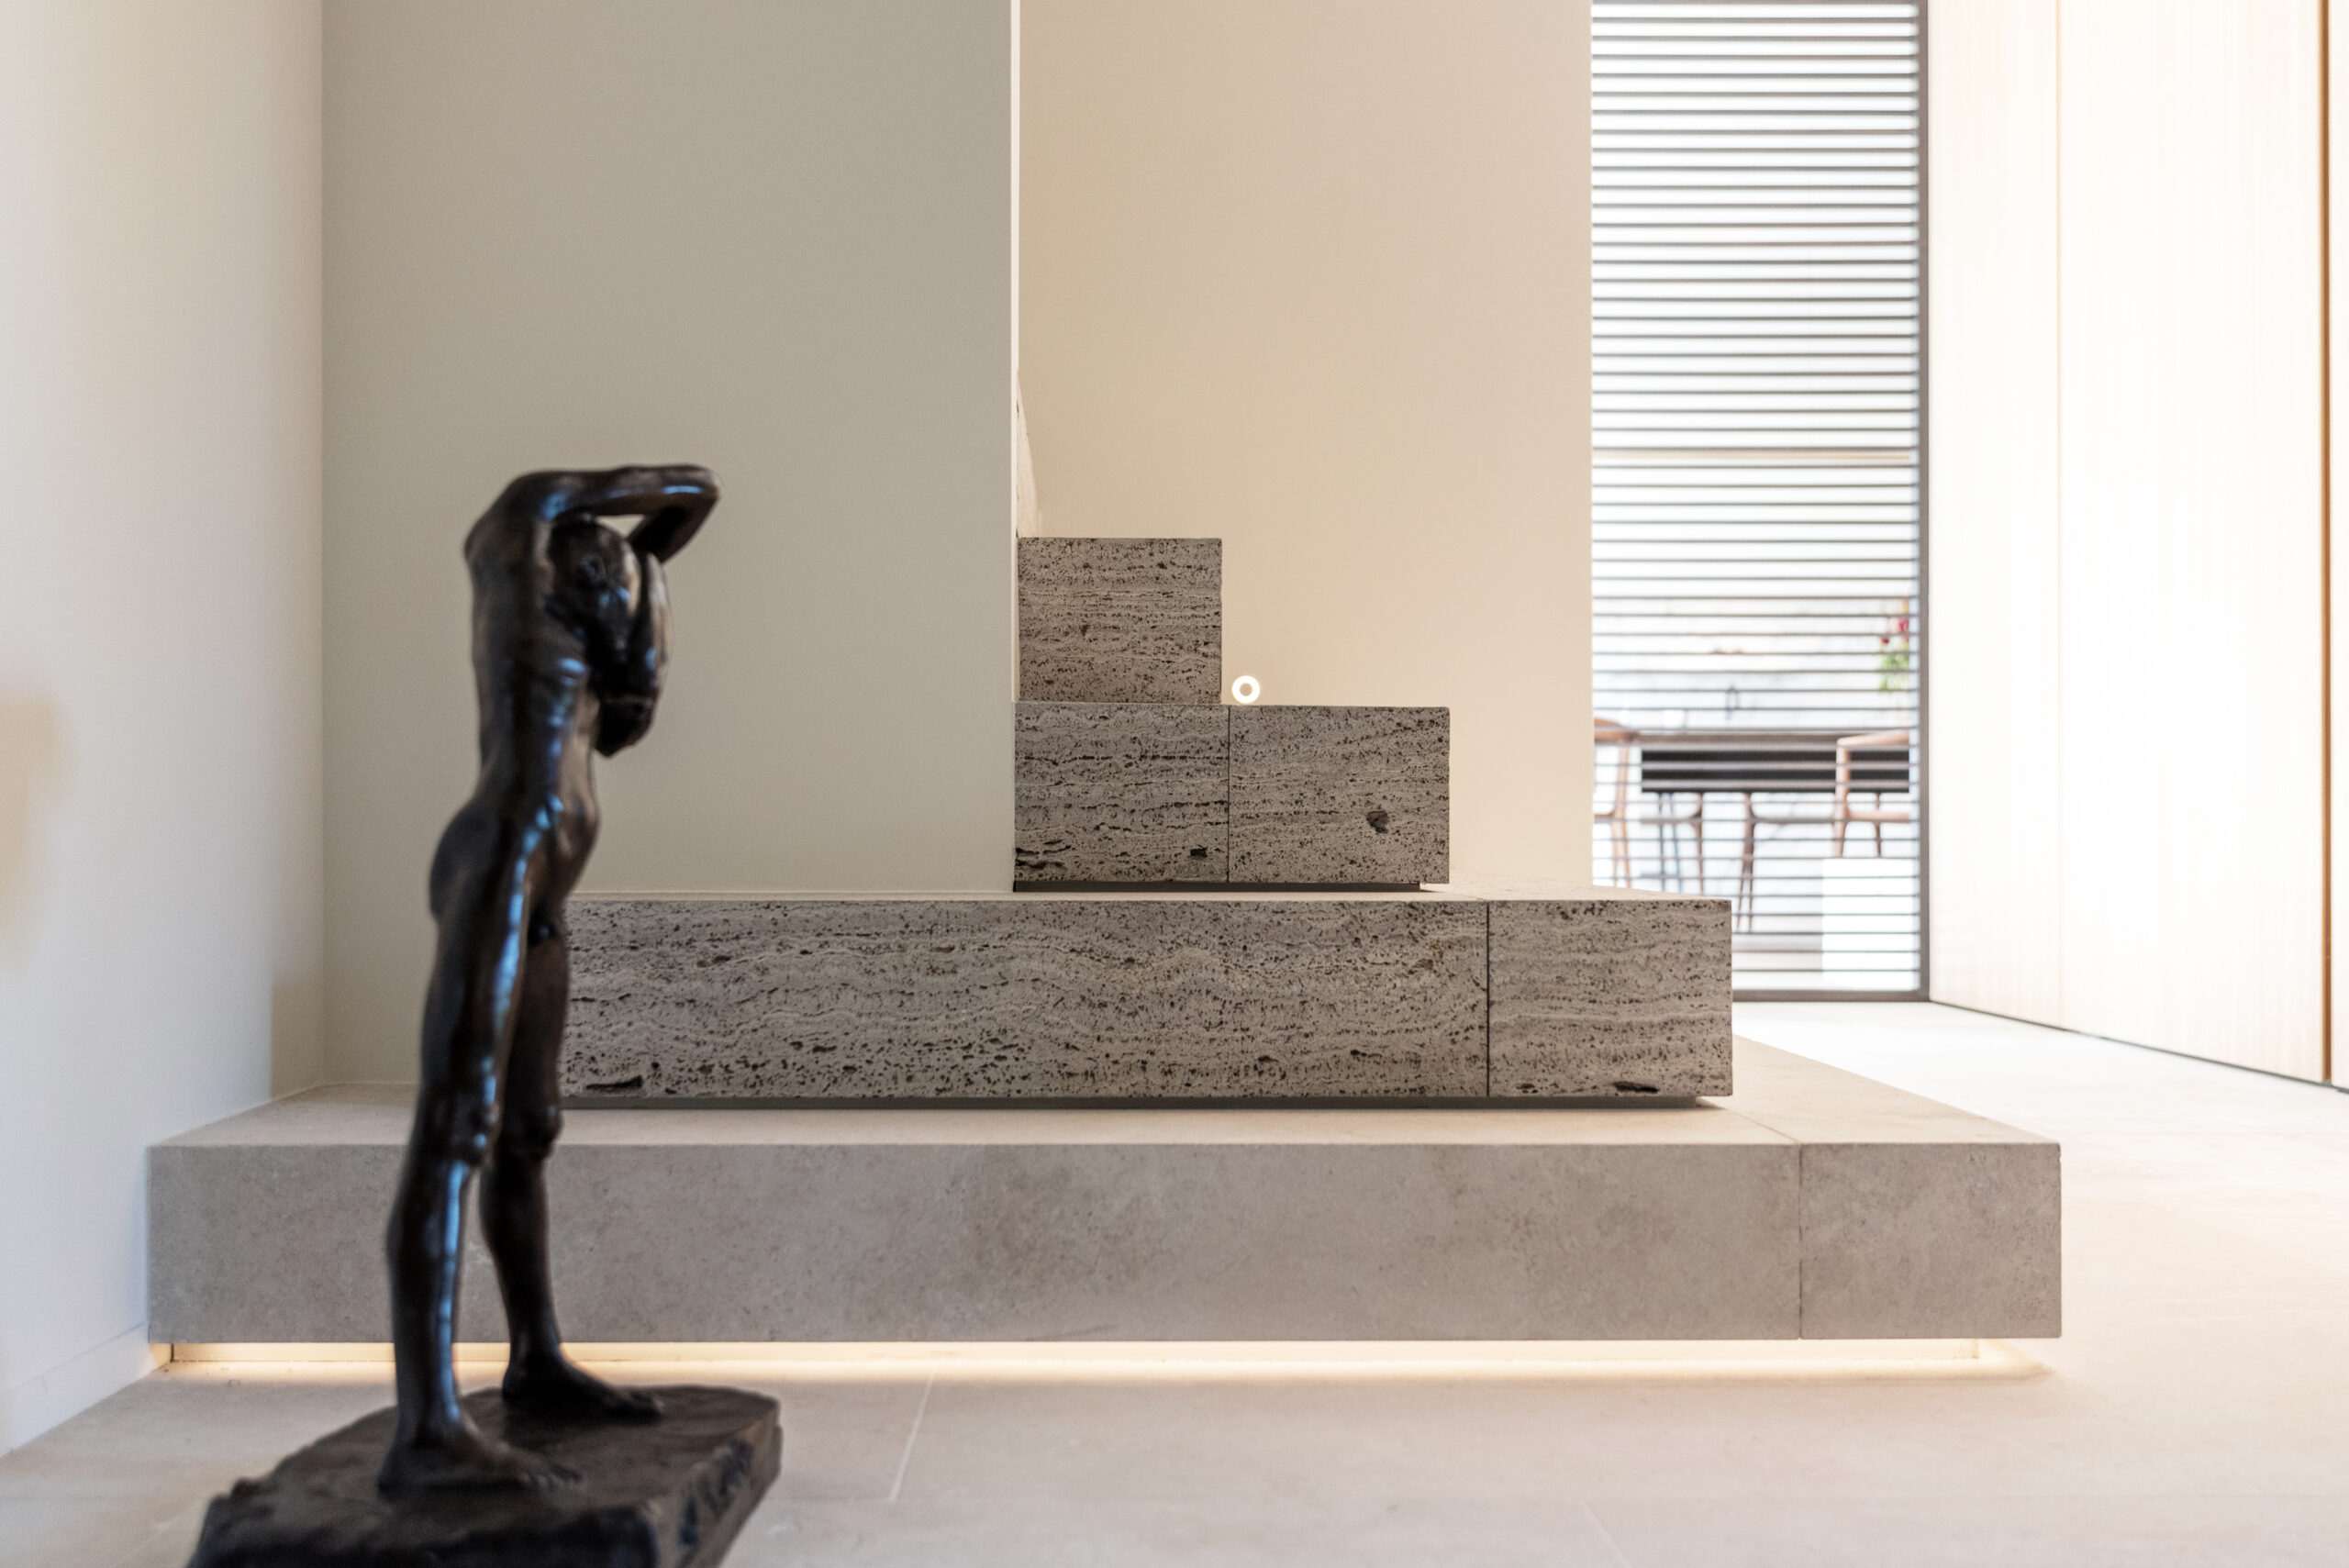 Bronze sculpture in a modern, minimalist interior.